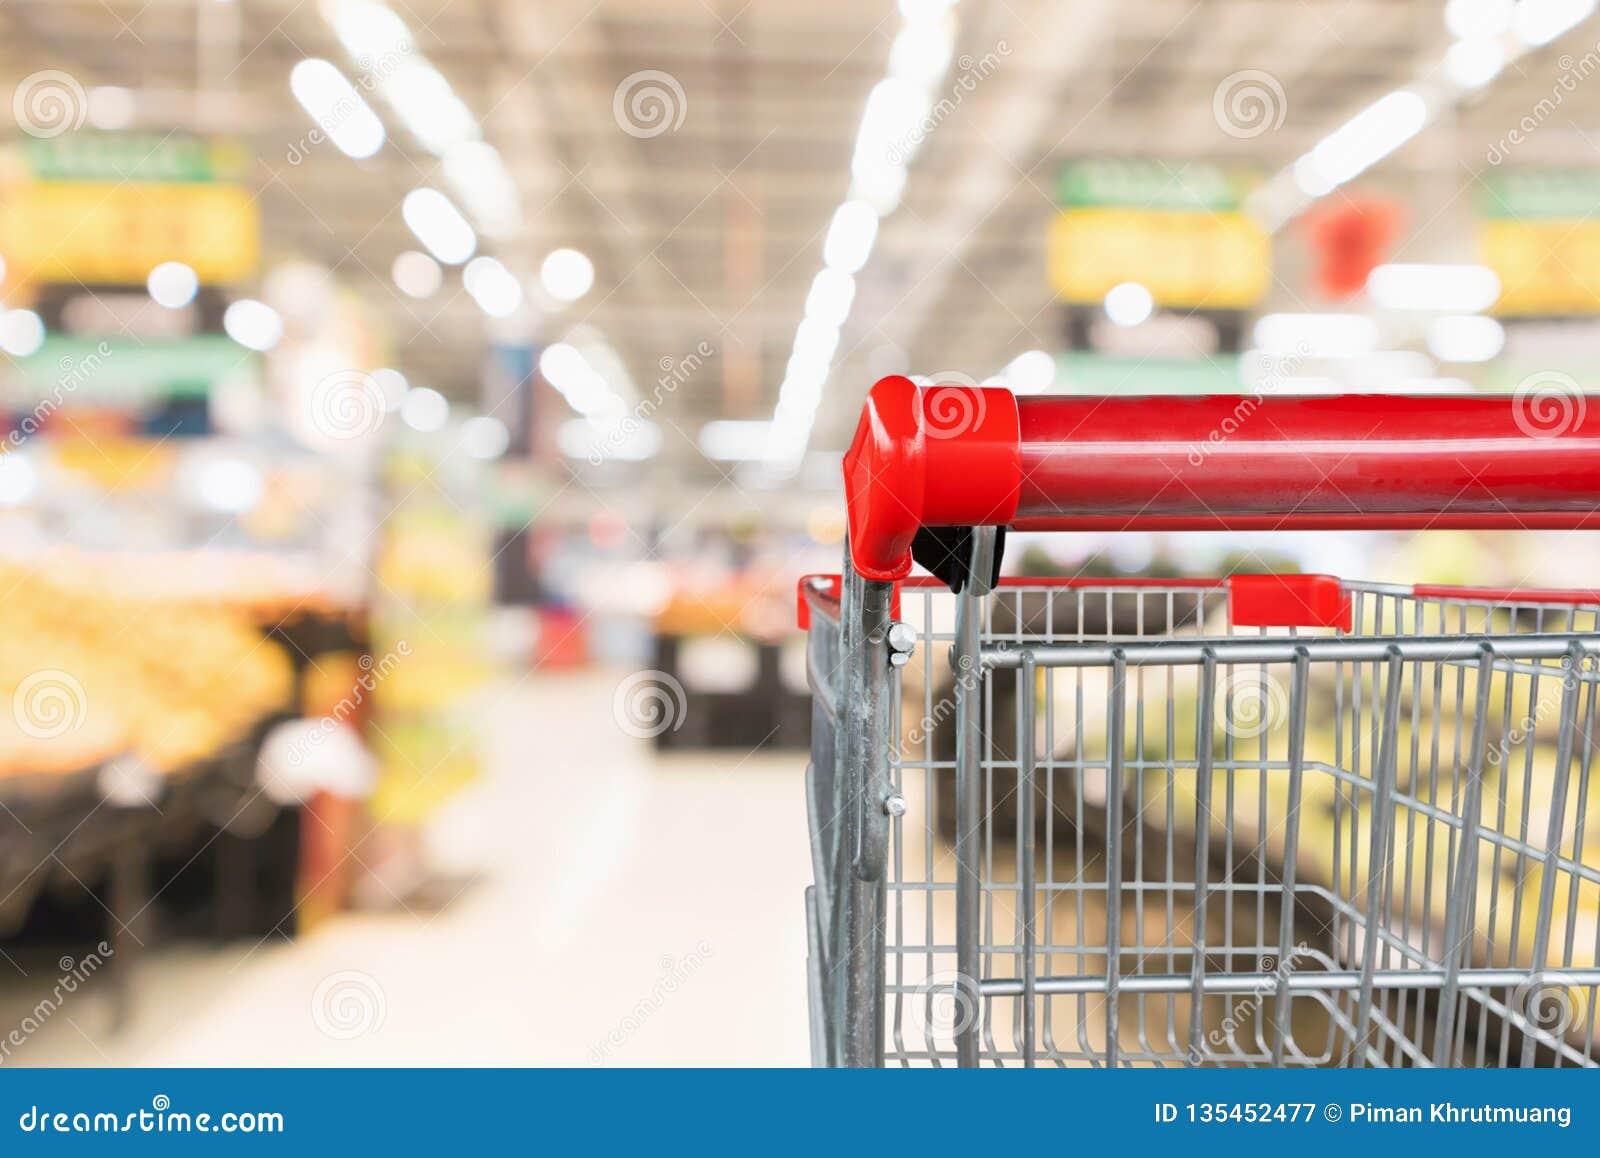 Supermercado Interior, Vacío Rojo Carrito De Compras. Fotos